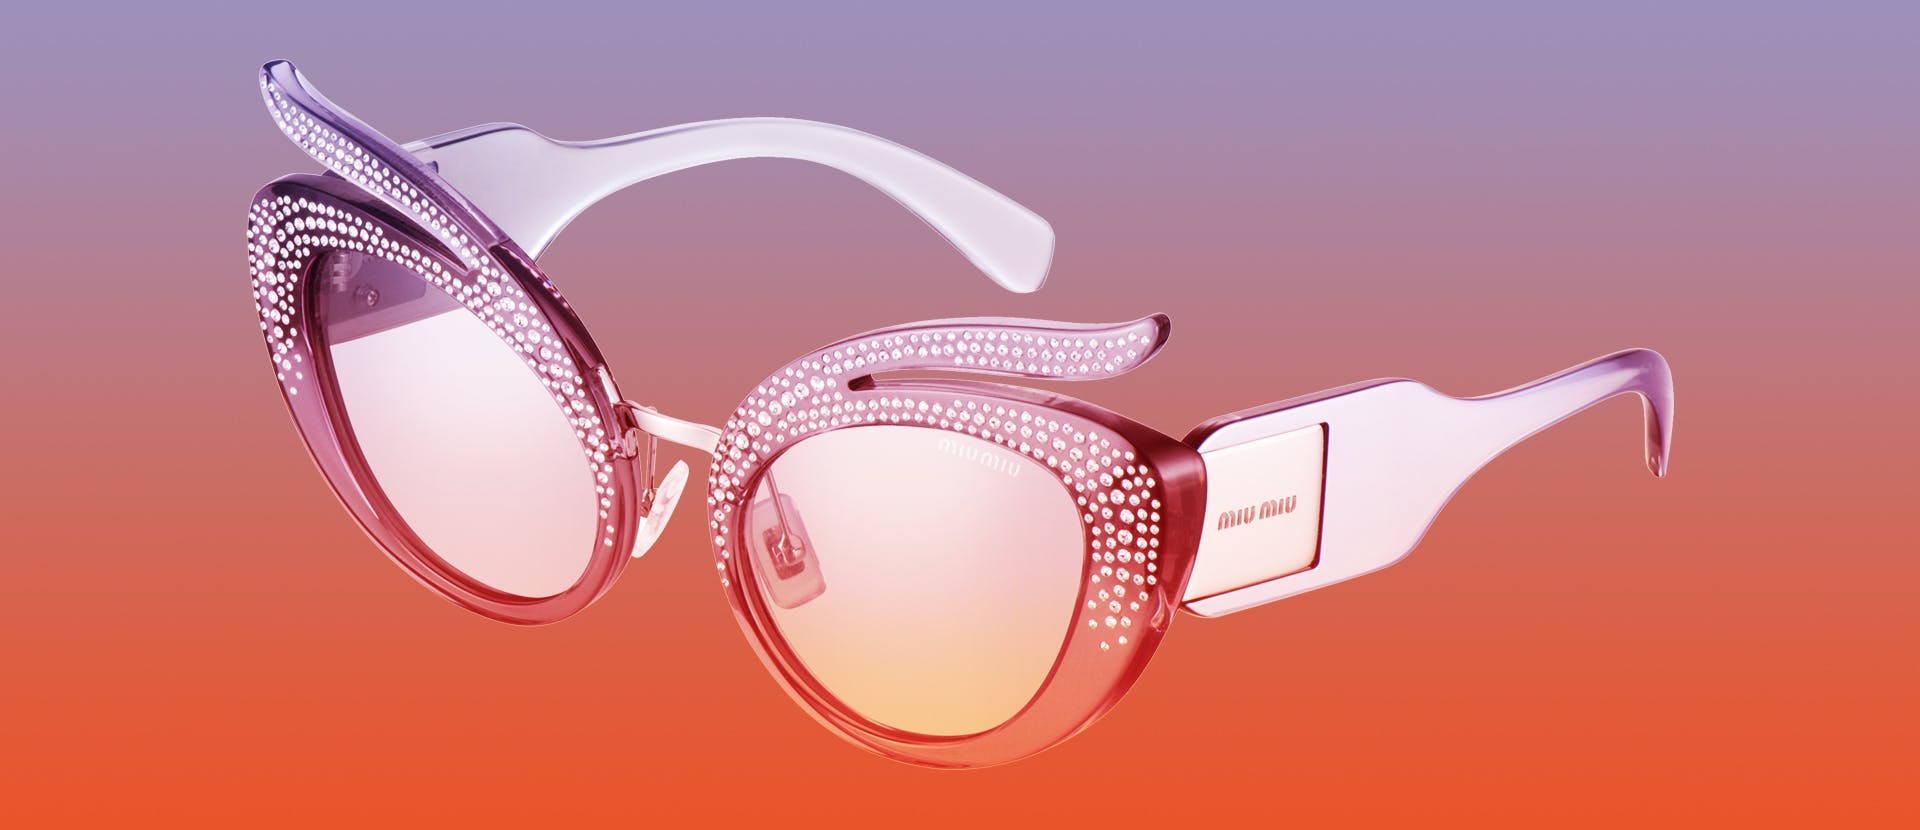 accessories accessory glasses sunglasses